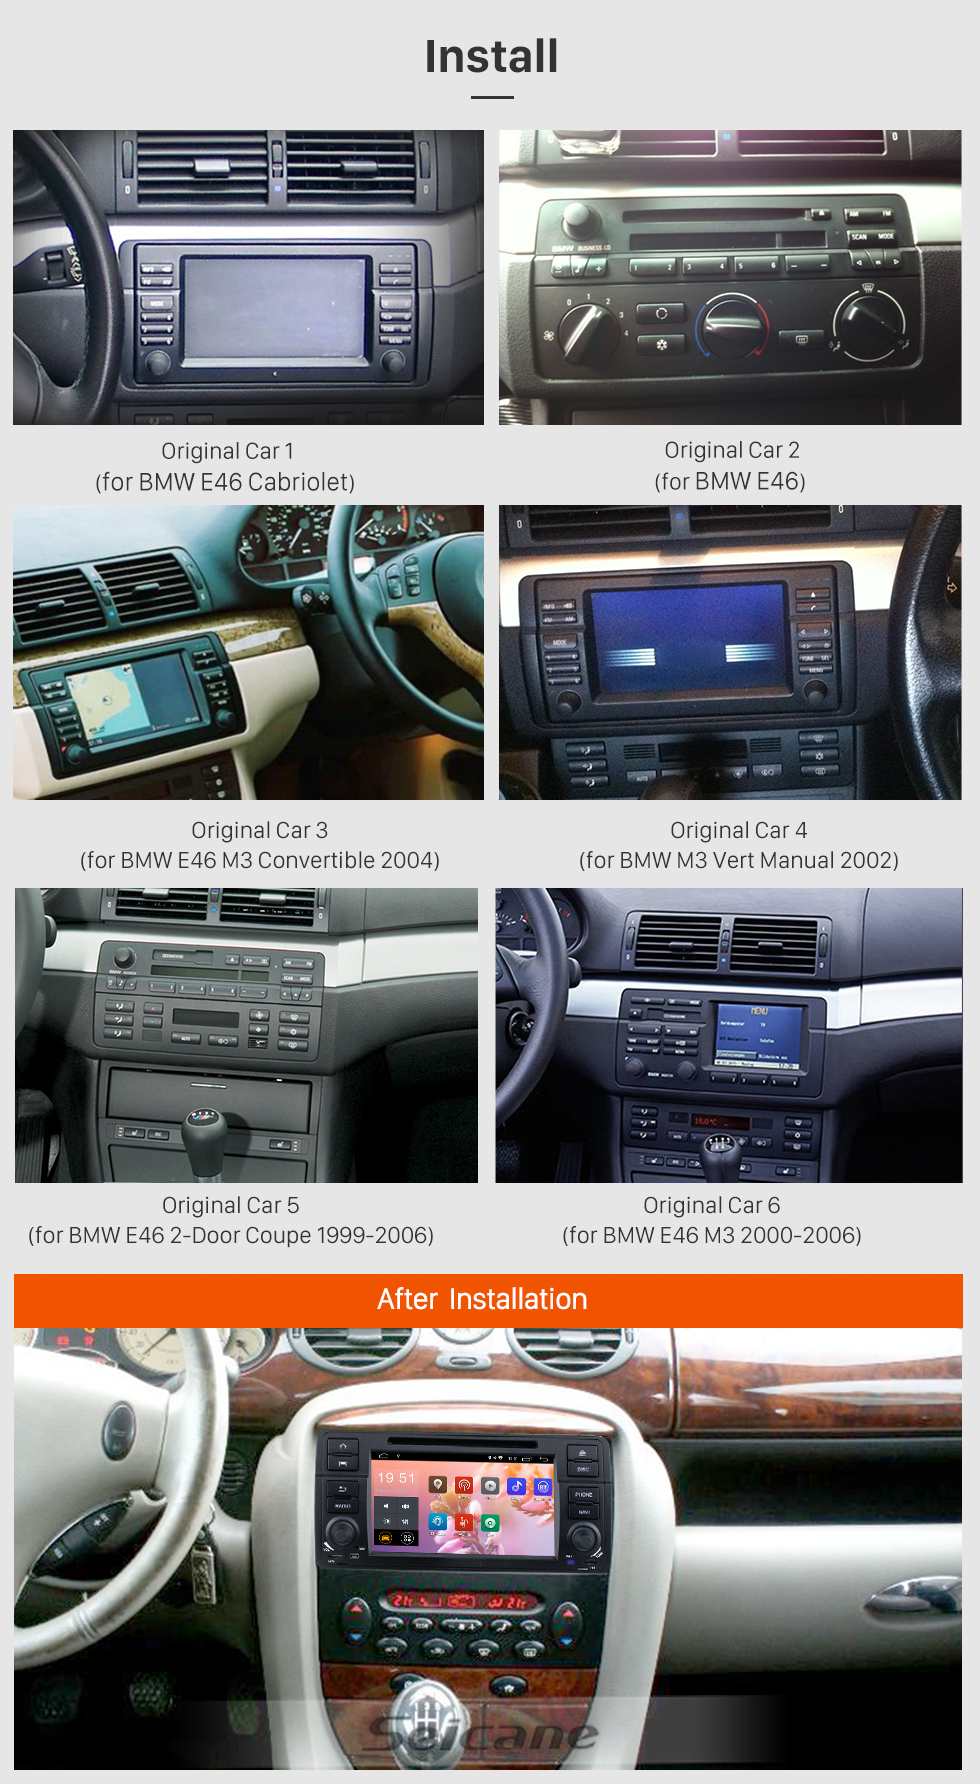 Seicane 7 pouces Android 9.0 Radio Radio Dash Pour 2000-2006 BMW Série 3 M3 E46 316i Rover 75 MG ZT Navigation de voiture Lecteur DVD Système audio Bluetooth Radio Support Musique Miroir Lien 3G WiFi DAB +